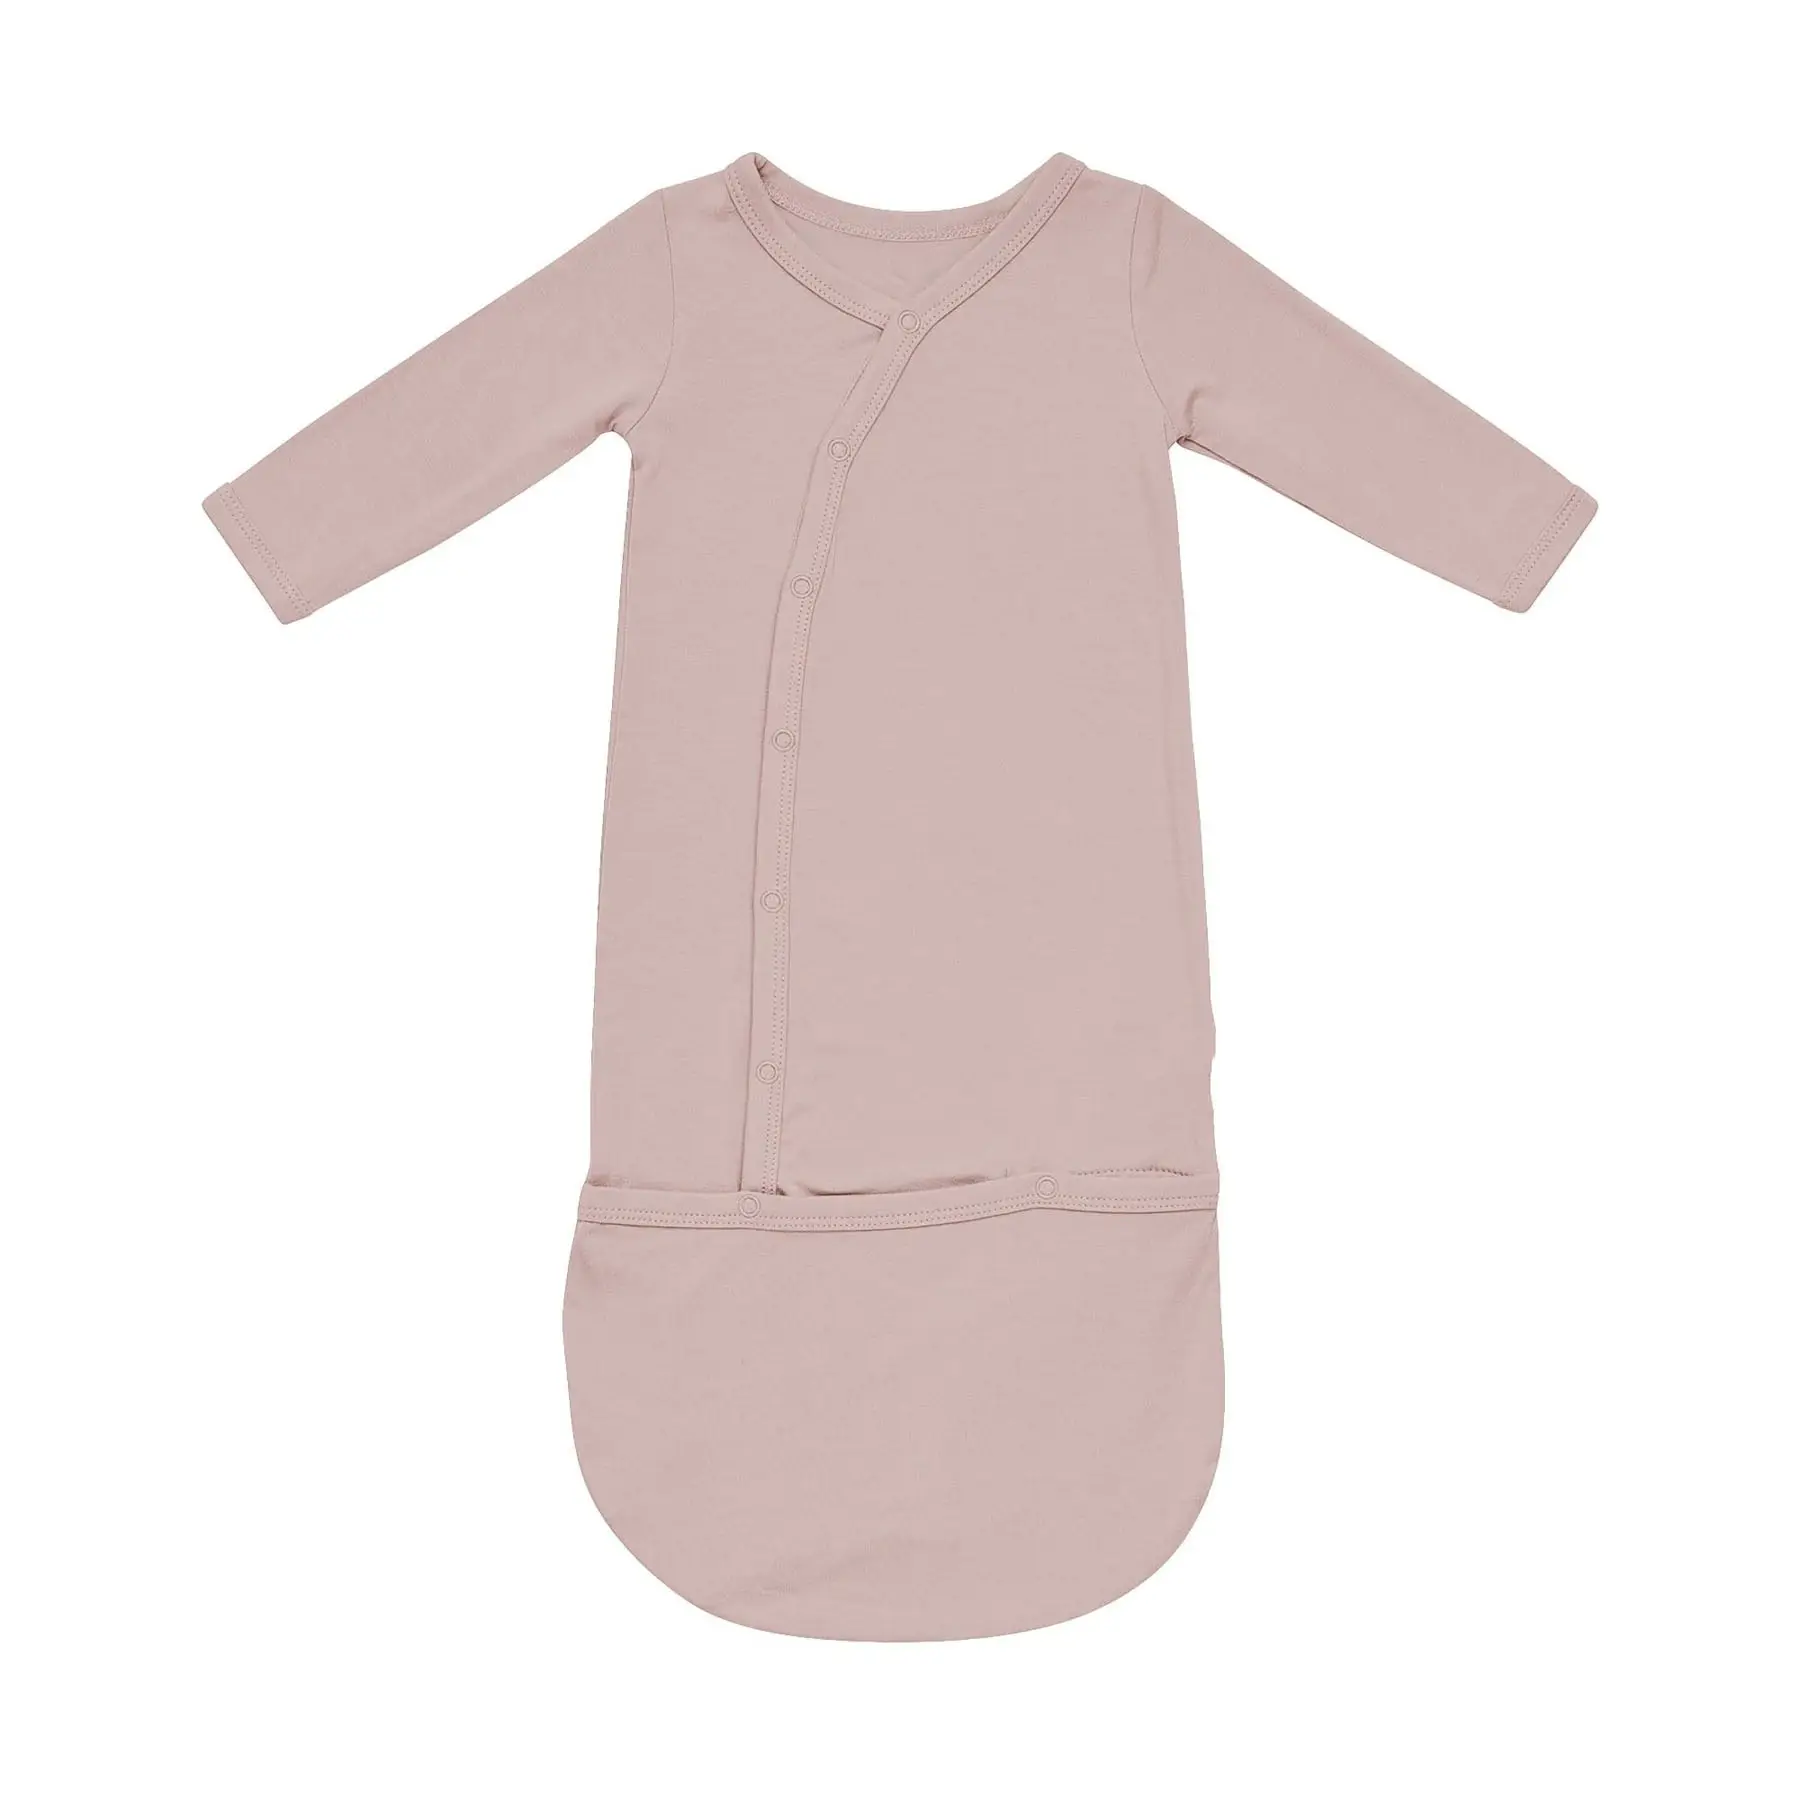 新しいデザインの幼児用寝袋100% 竹製スリープサックベビーボタンベビー寝袋